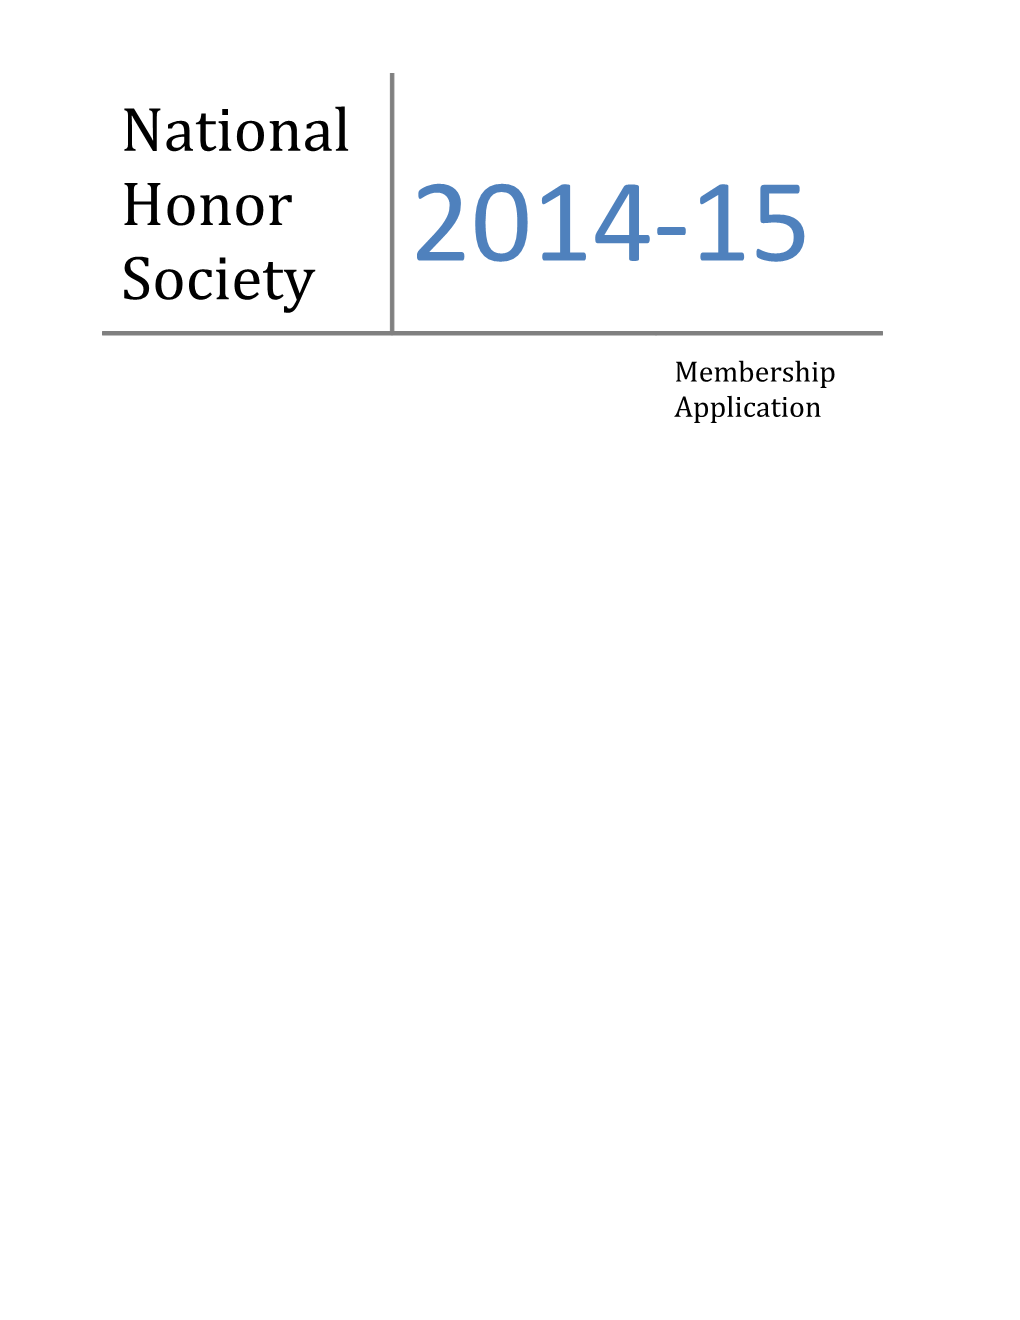 National Honor Society s4